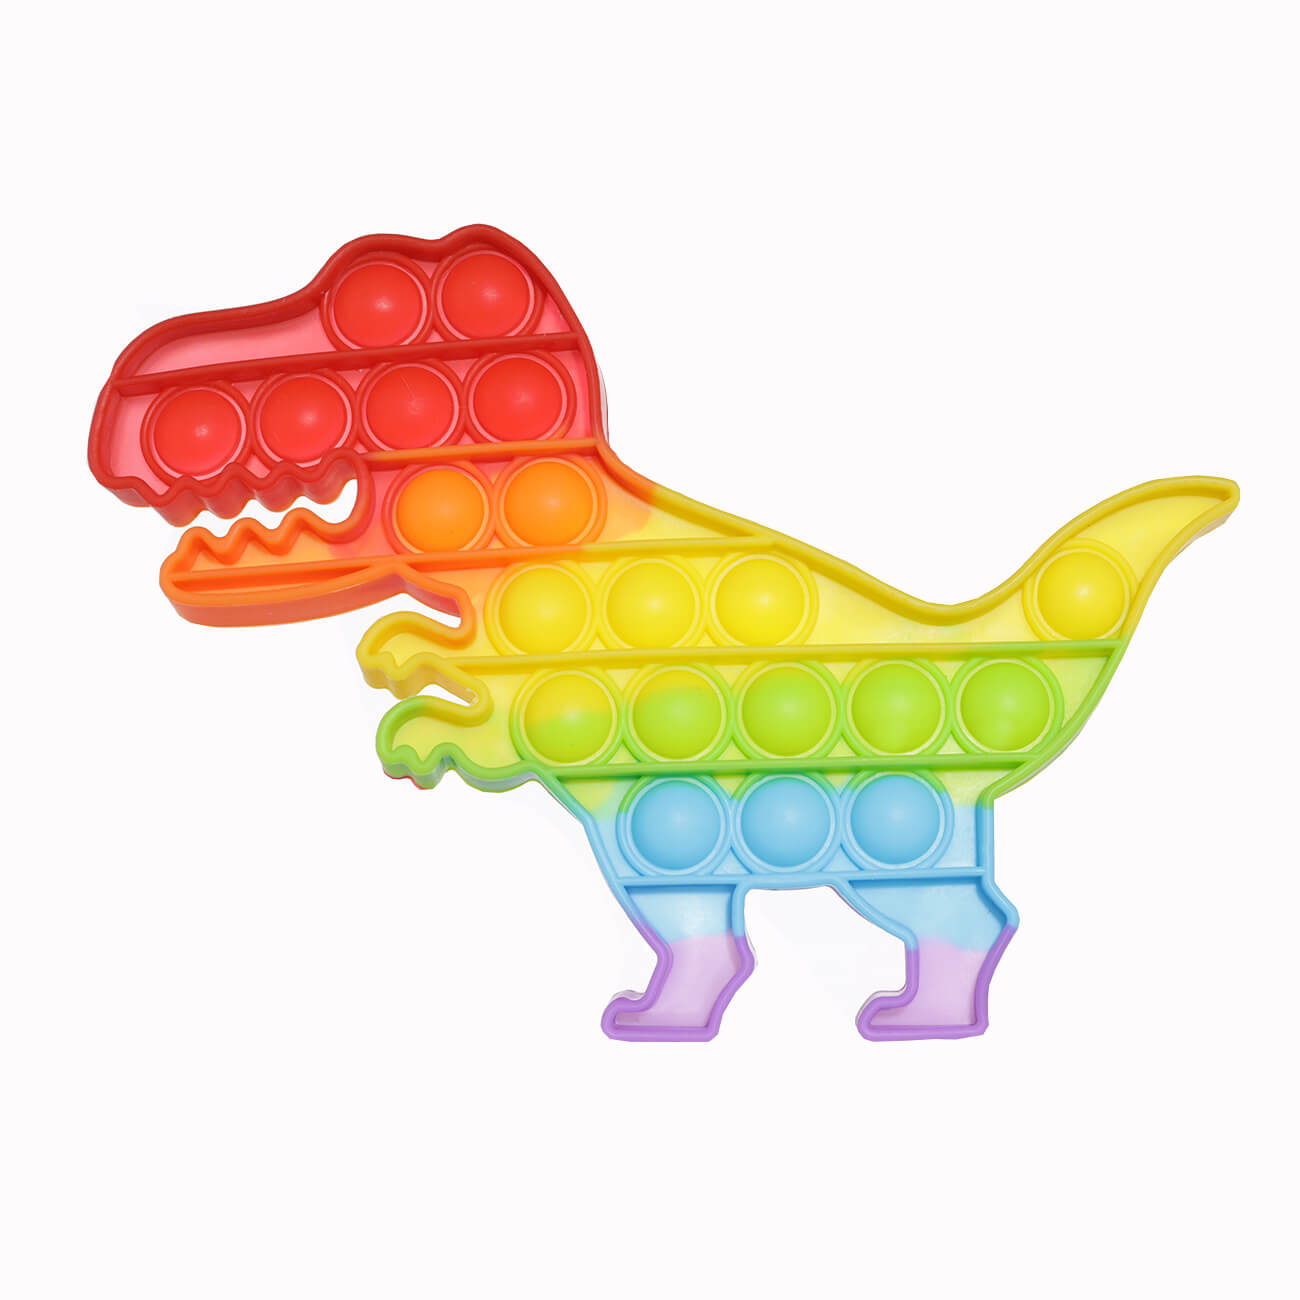 Игрушка-антистресс Pop-it, 19х14 см, силикон, цветная, Динозавр, Pop-it антистресс игрушка simple dimple 3 резиновых пузырька с карабином разно ный